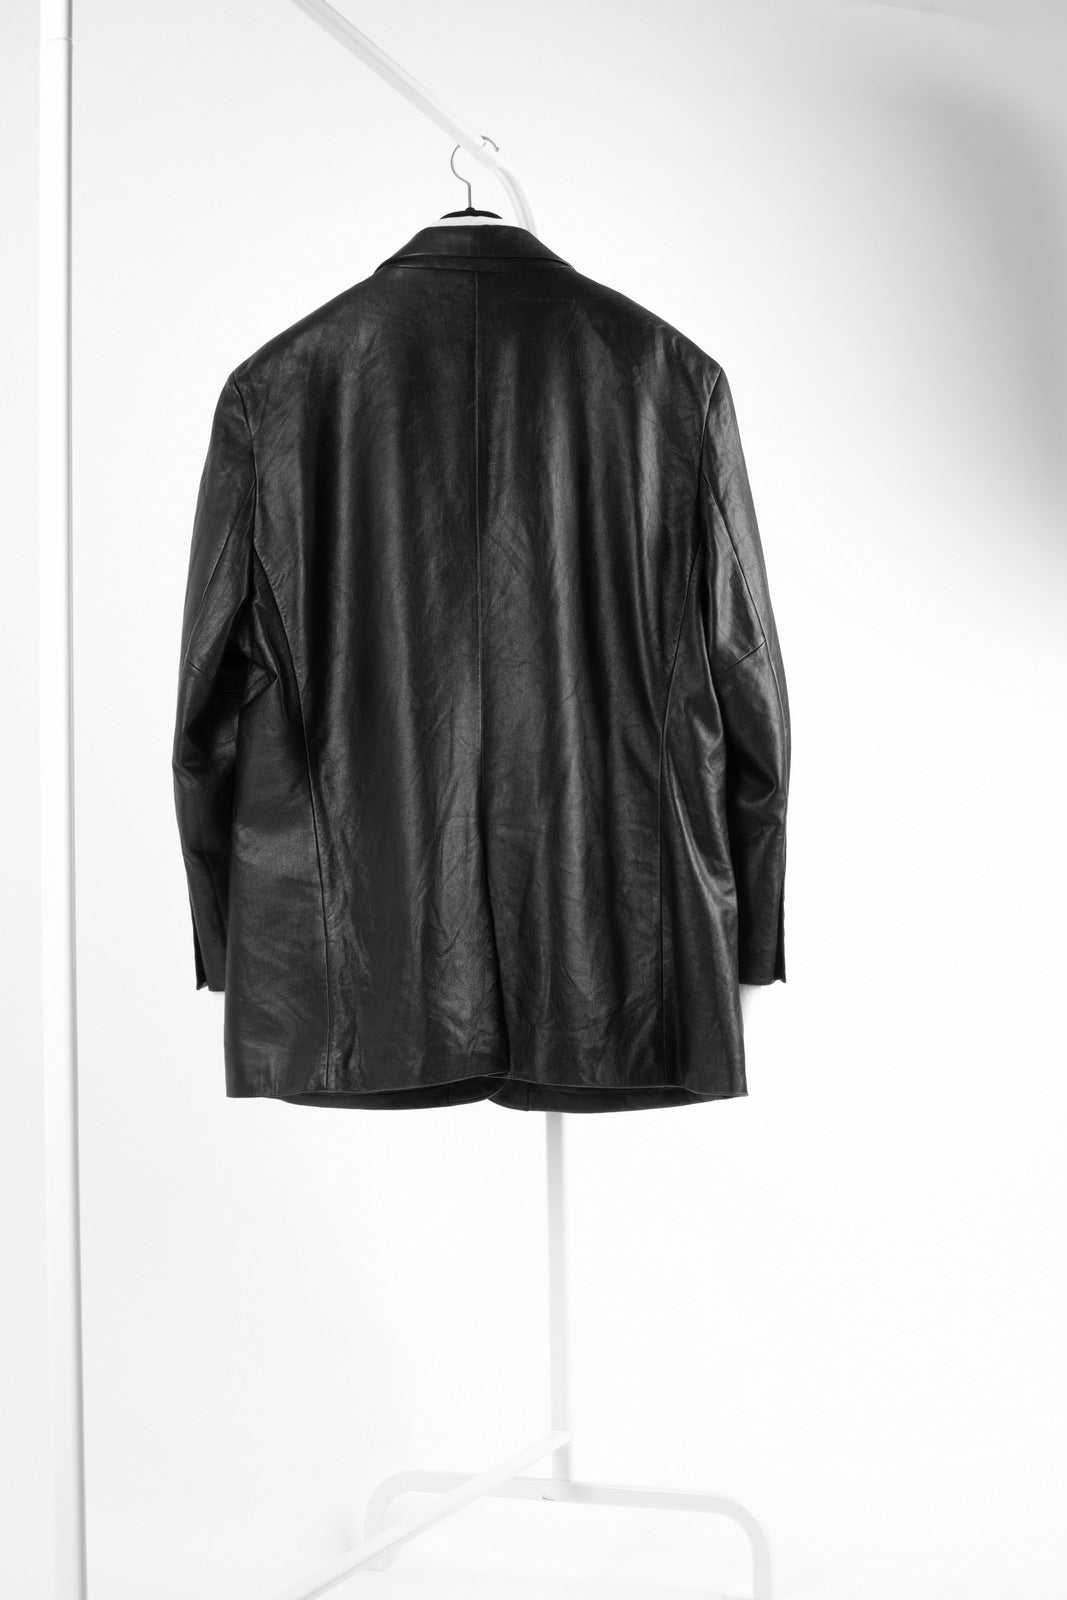 Genuine Leather Black 3 Button Blazer Jacket, Men's XL